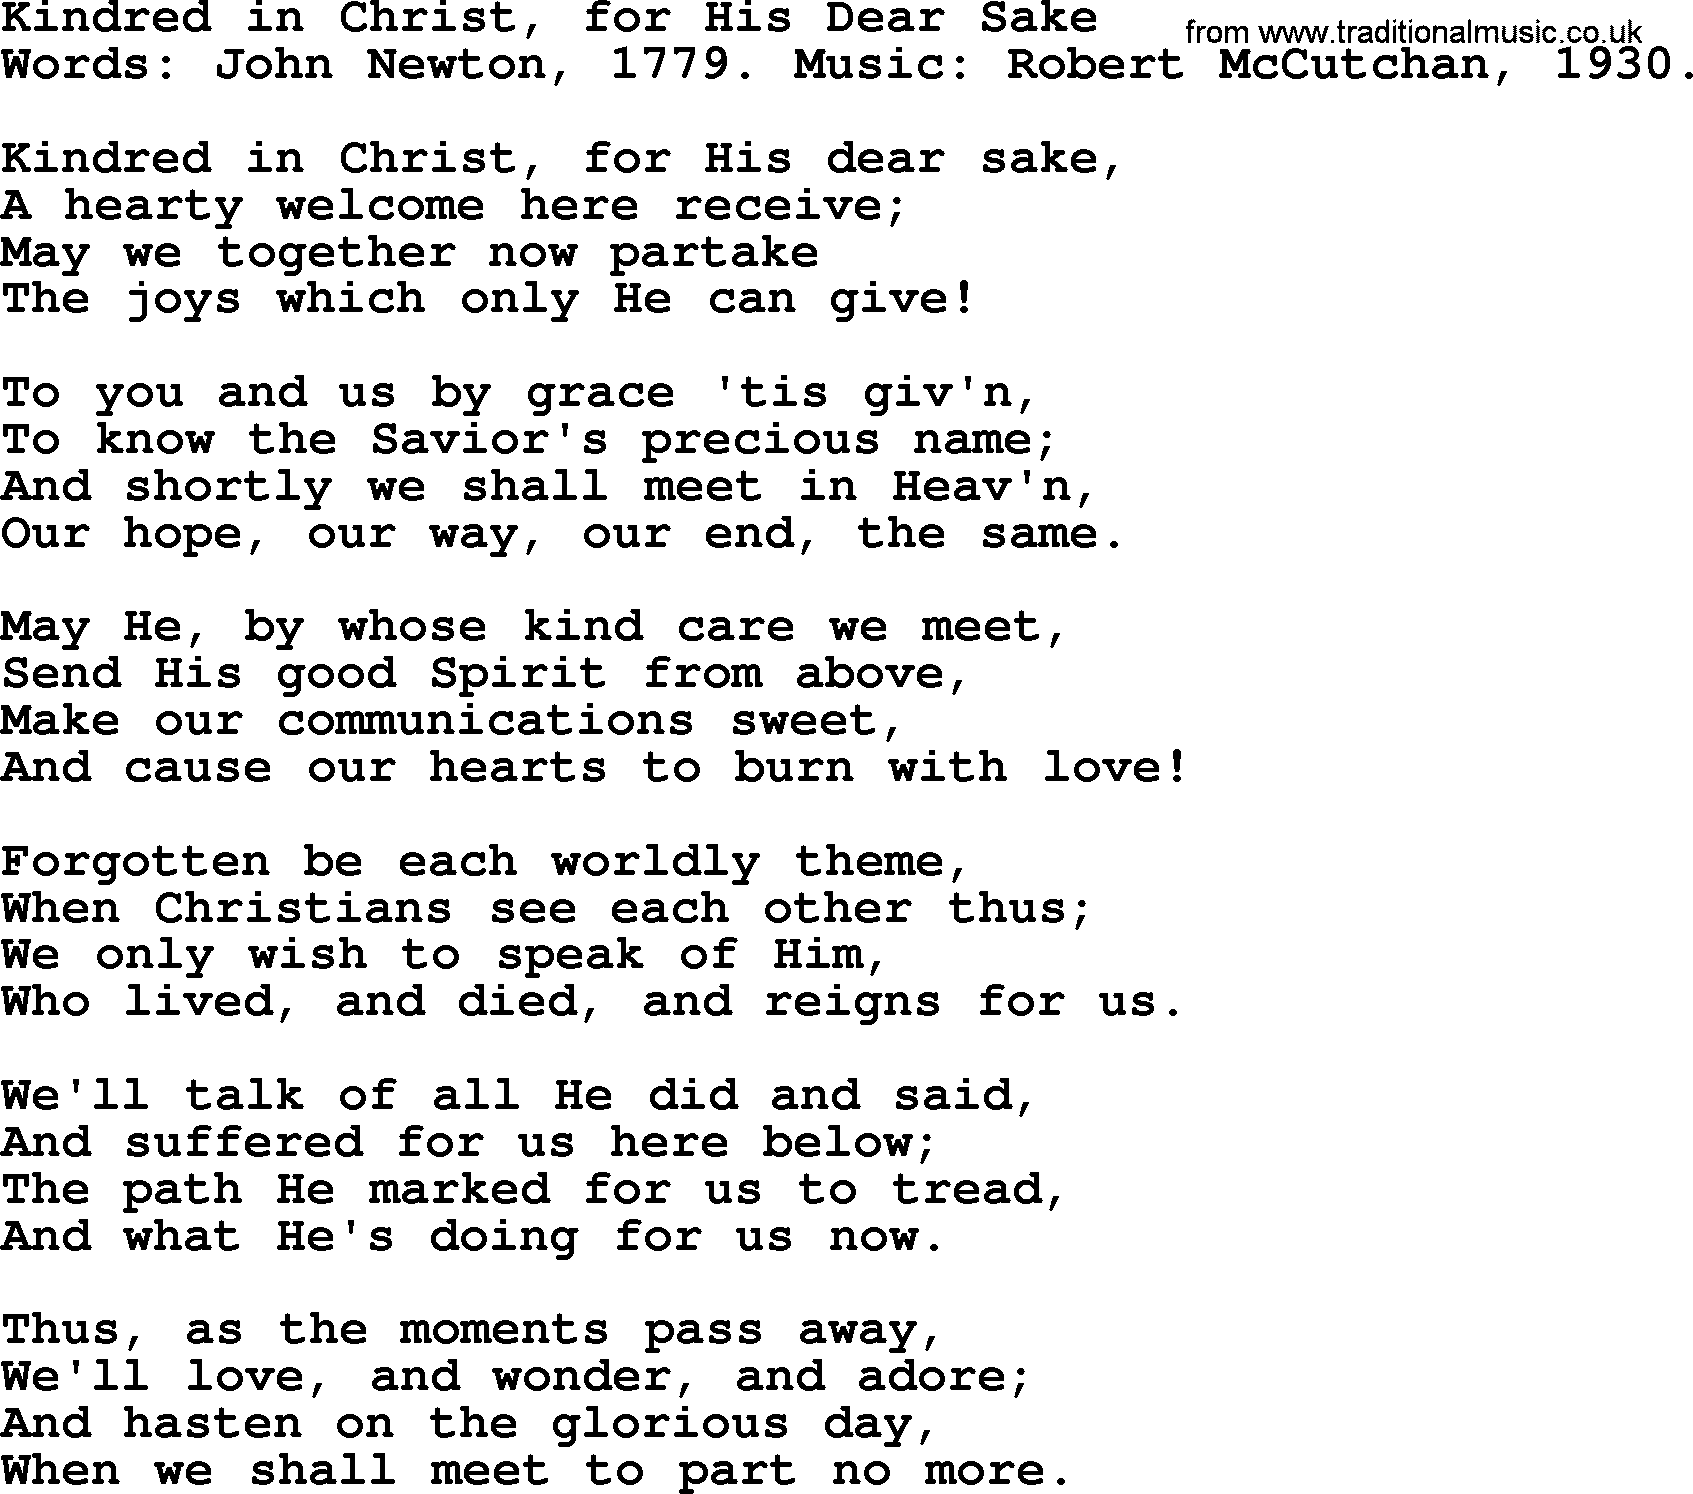 John Newton hymn: Kindred In Christ, For His Dear Sake, lyrics